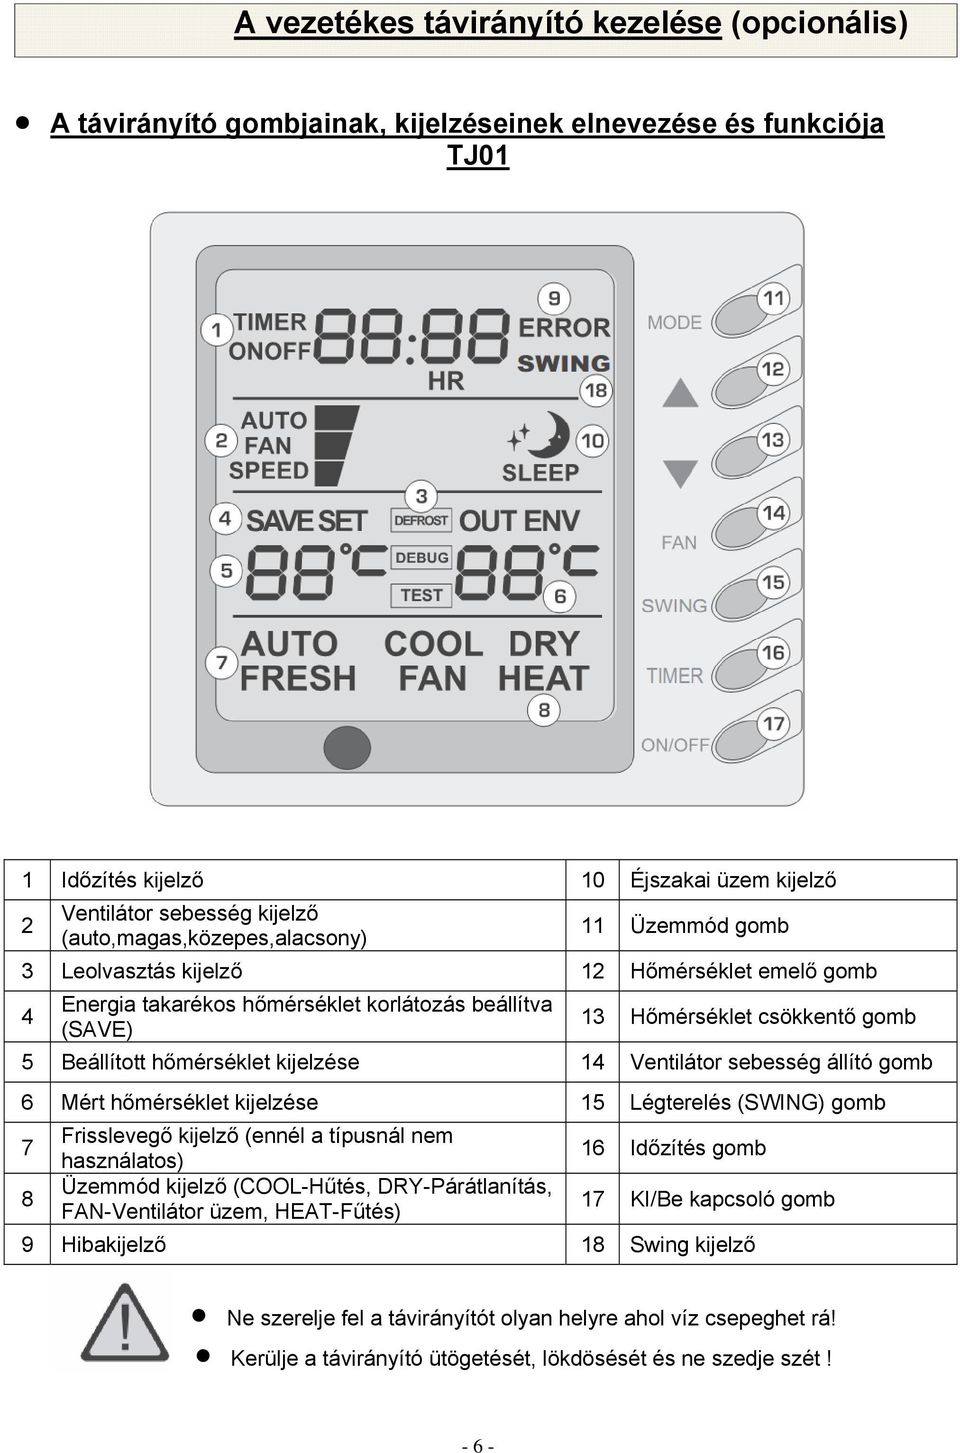 hőmérséklet kijelzése 14 Ventilátor sebesség állító gomb 6 Mért hőmérséklet kijelzése 15 Légterelés (SWING) gomb 7 8 Frisslevegő kijelző (ennél a típusnál nem használatos) Üzemmód kijelző